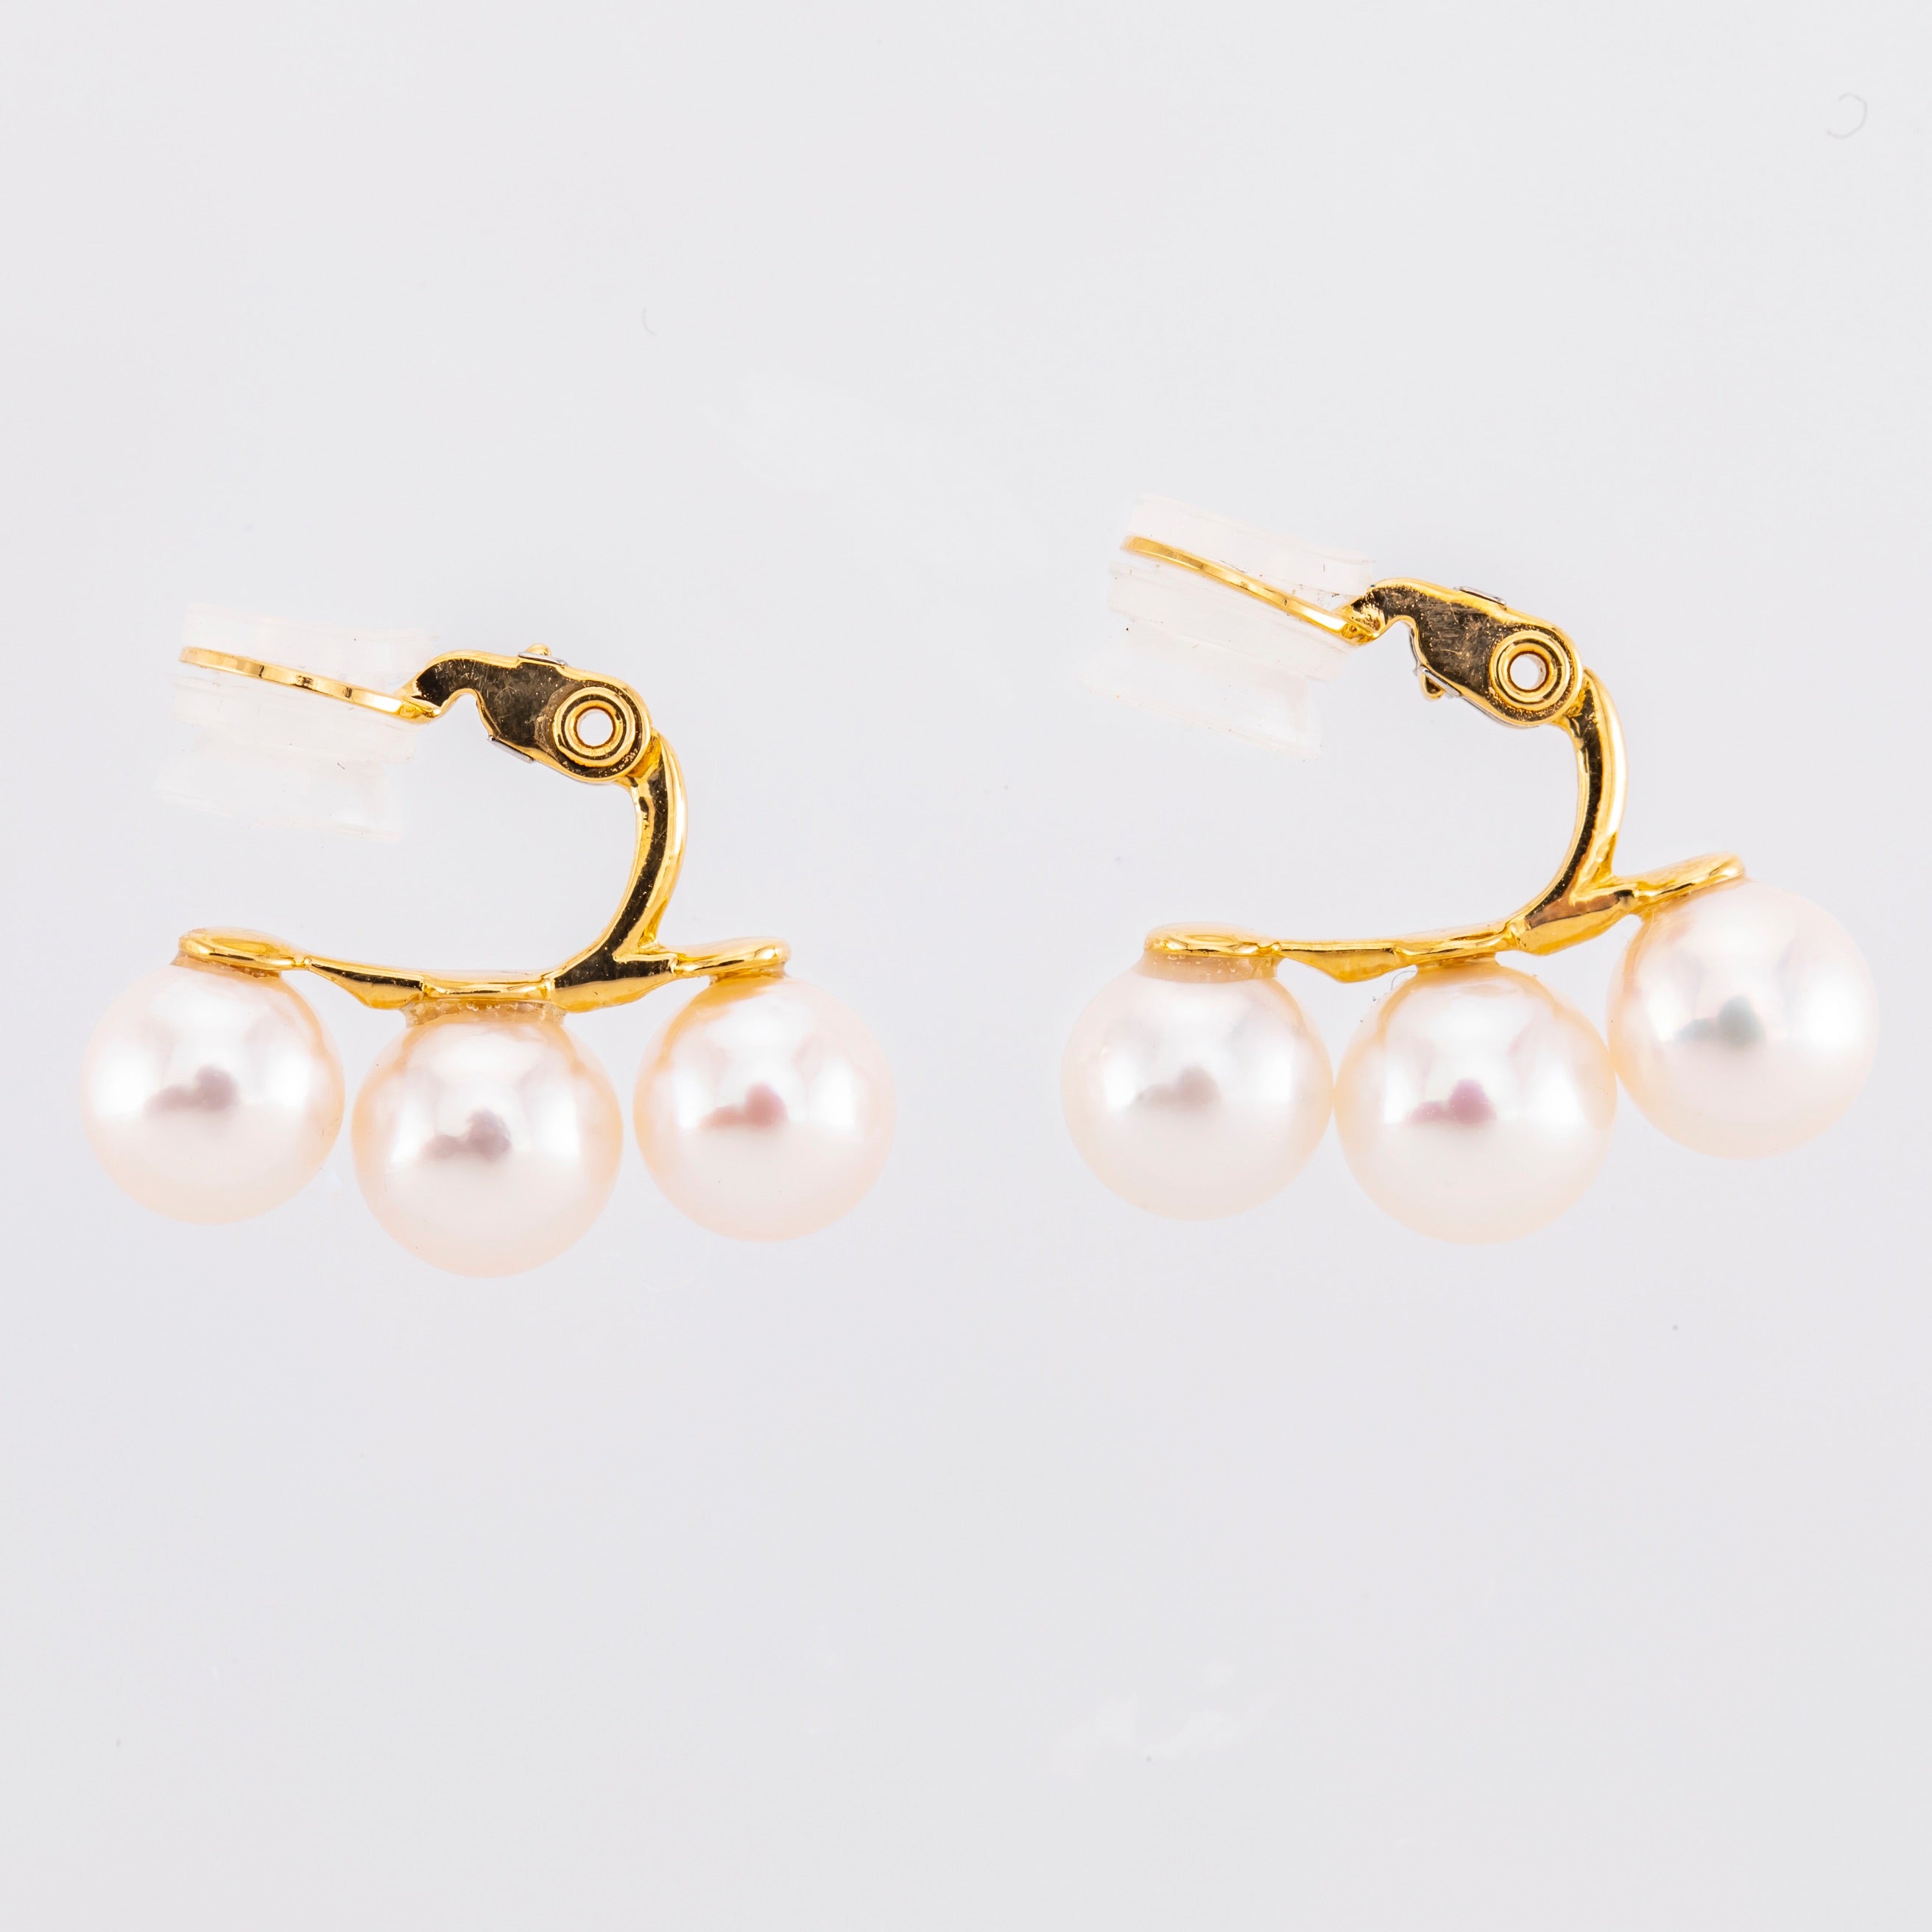 K18 perle/Perl earring